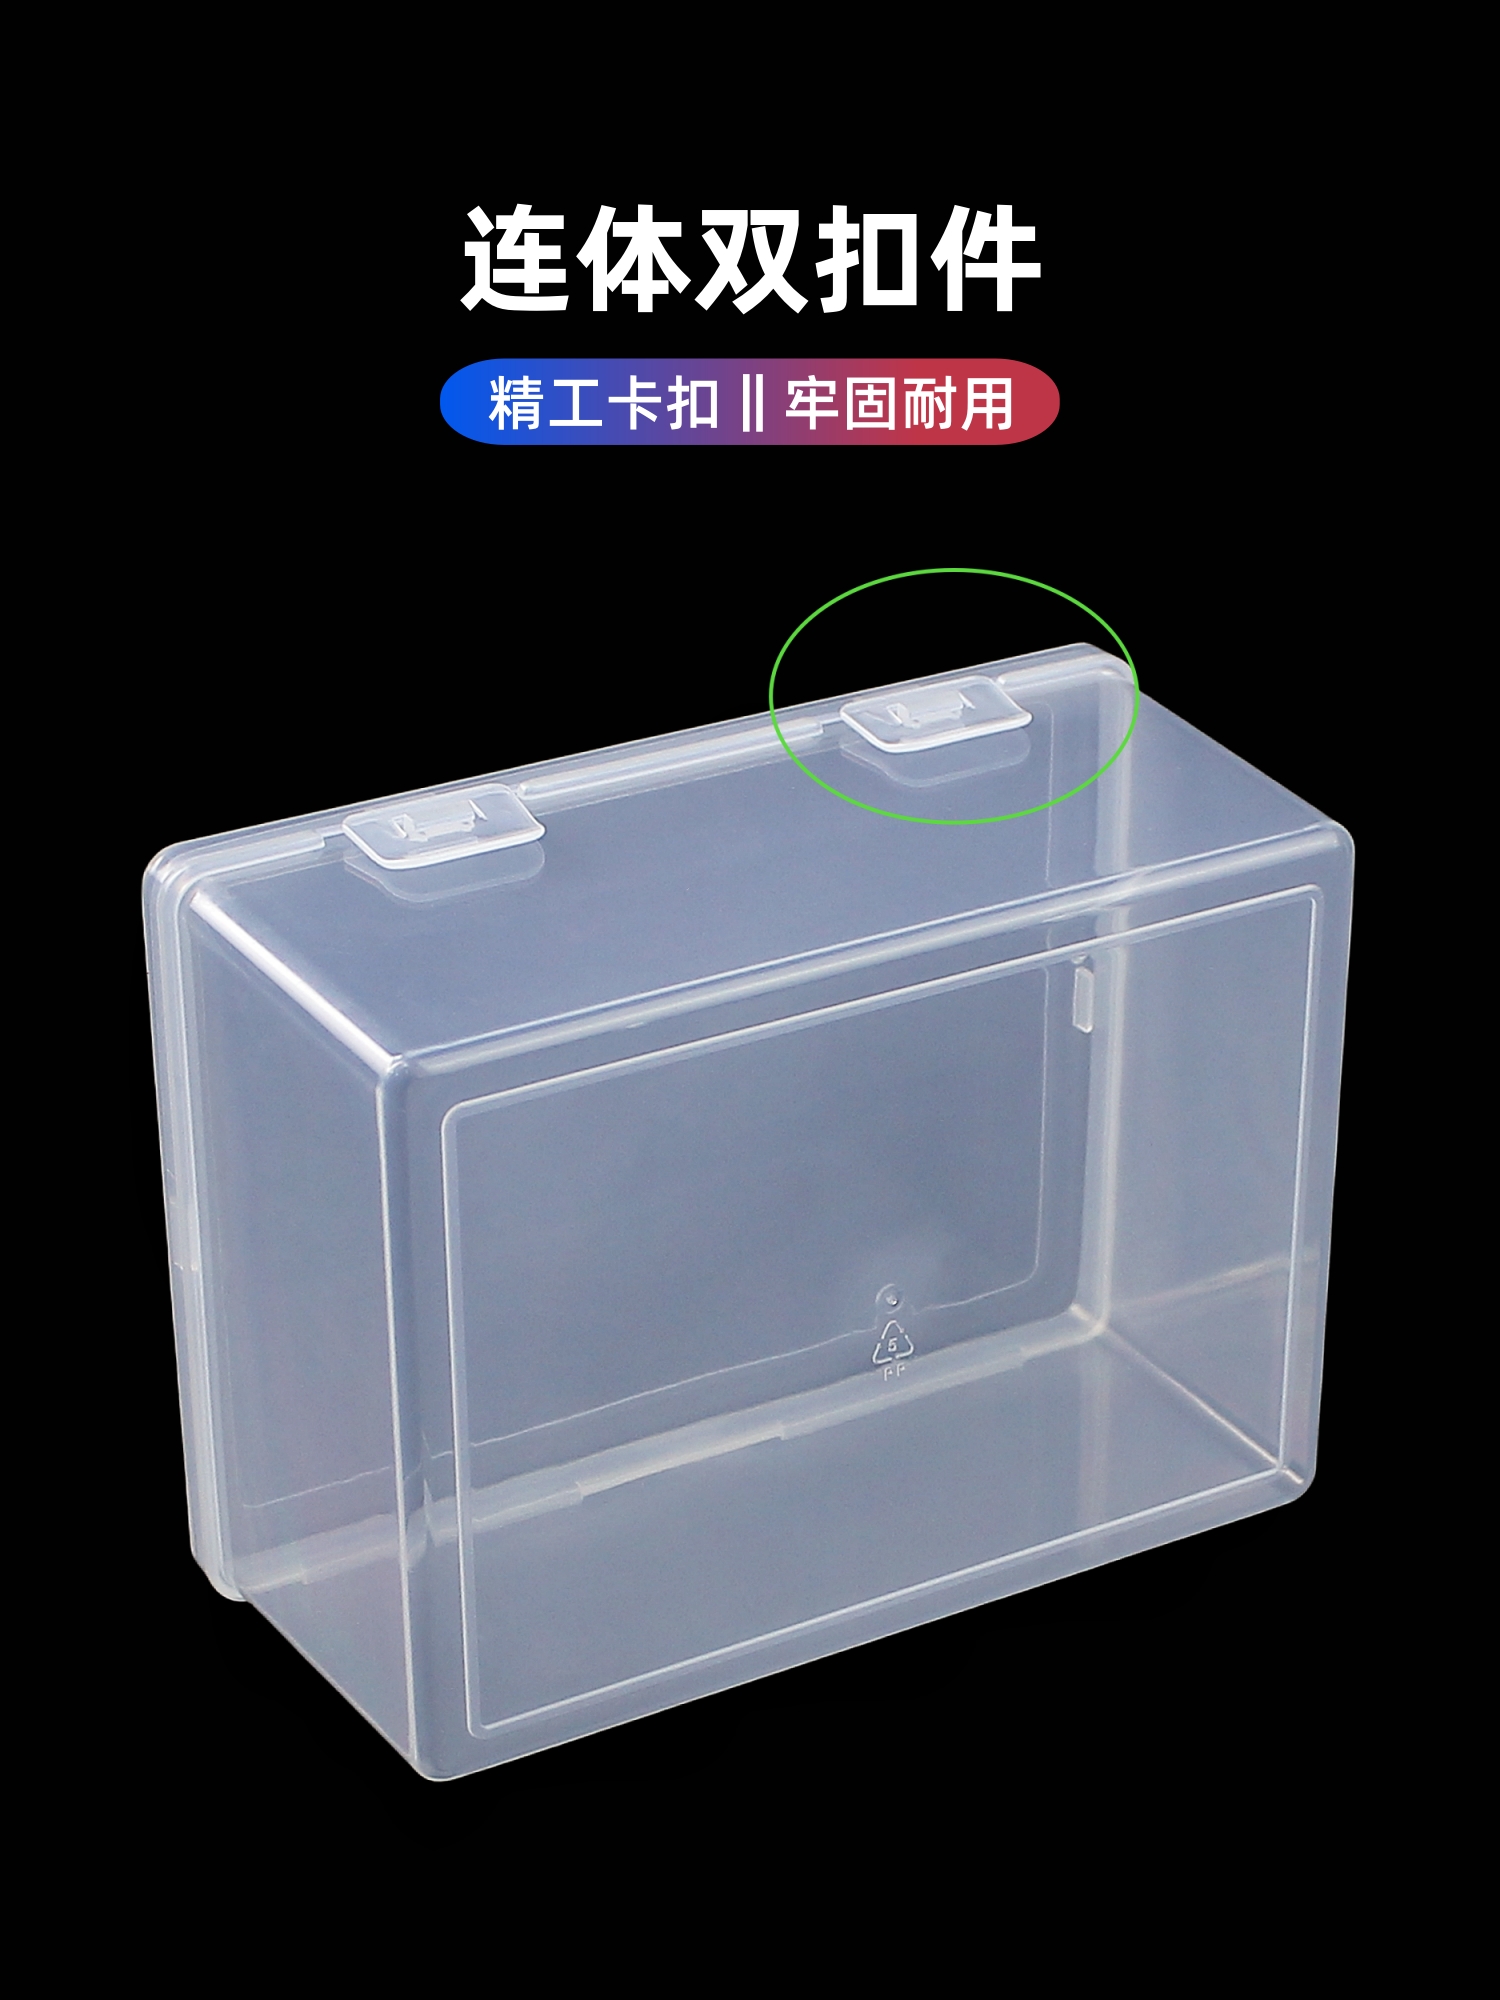 PP塑料盒长方形透明带盖收纳盒家居家用桌面整理盒工具零件配件盒